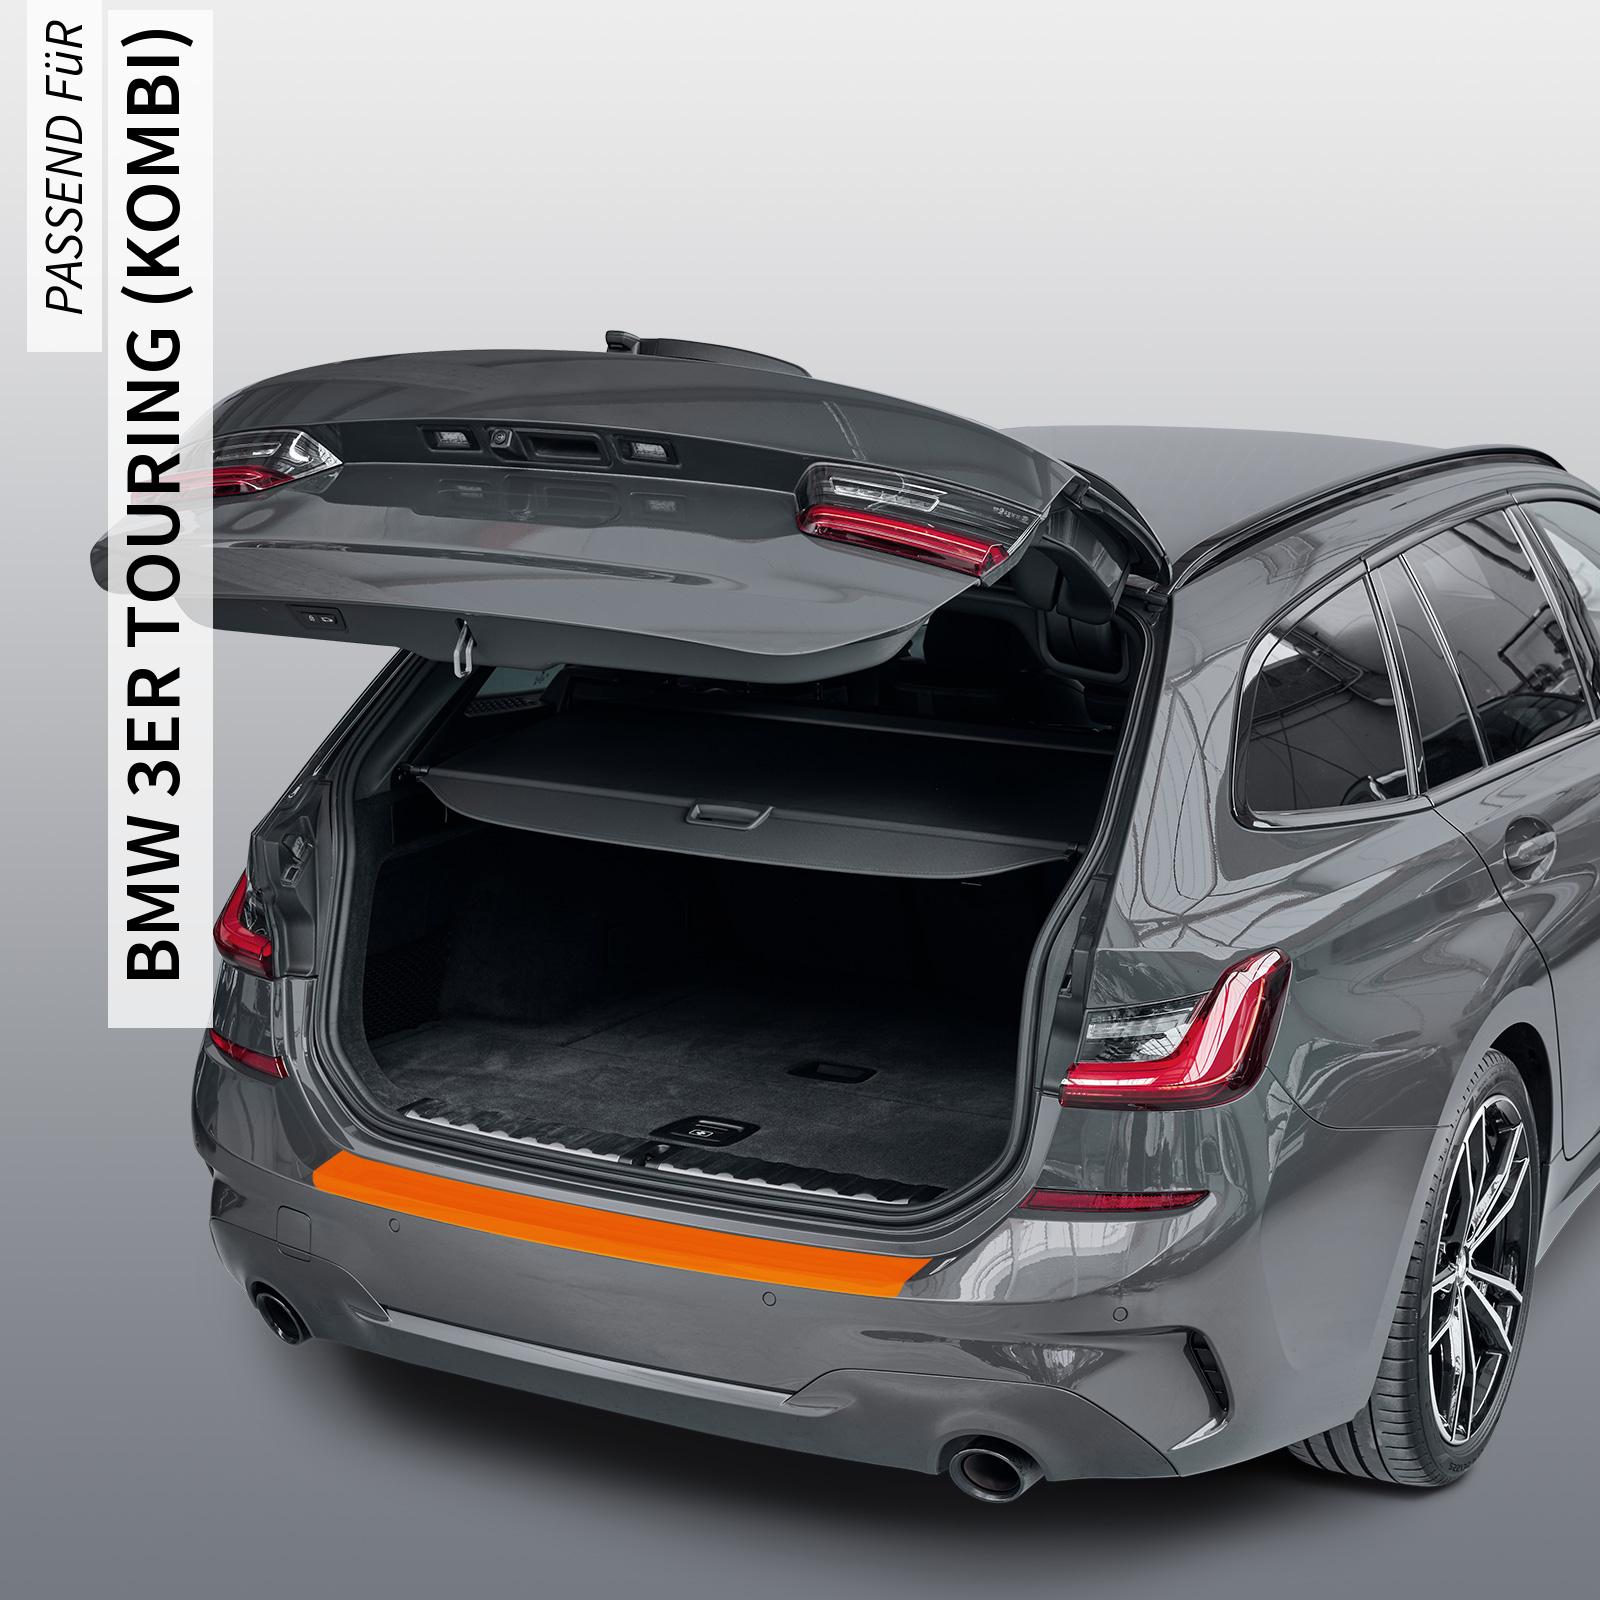 Ladekantenschutzfolie - Transparent Glatt MATT für BMW 3er Touring (Kombi) Typ G21, Facelift, ab BJ 07/2022